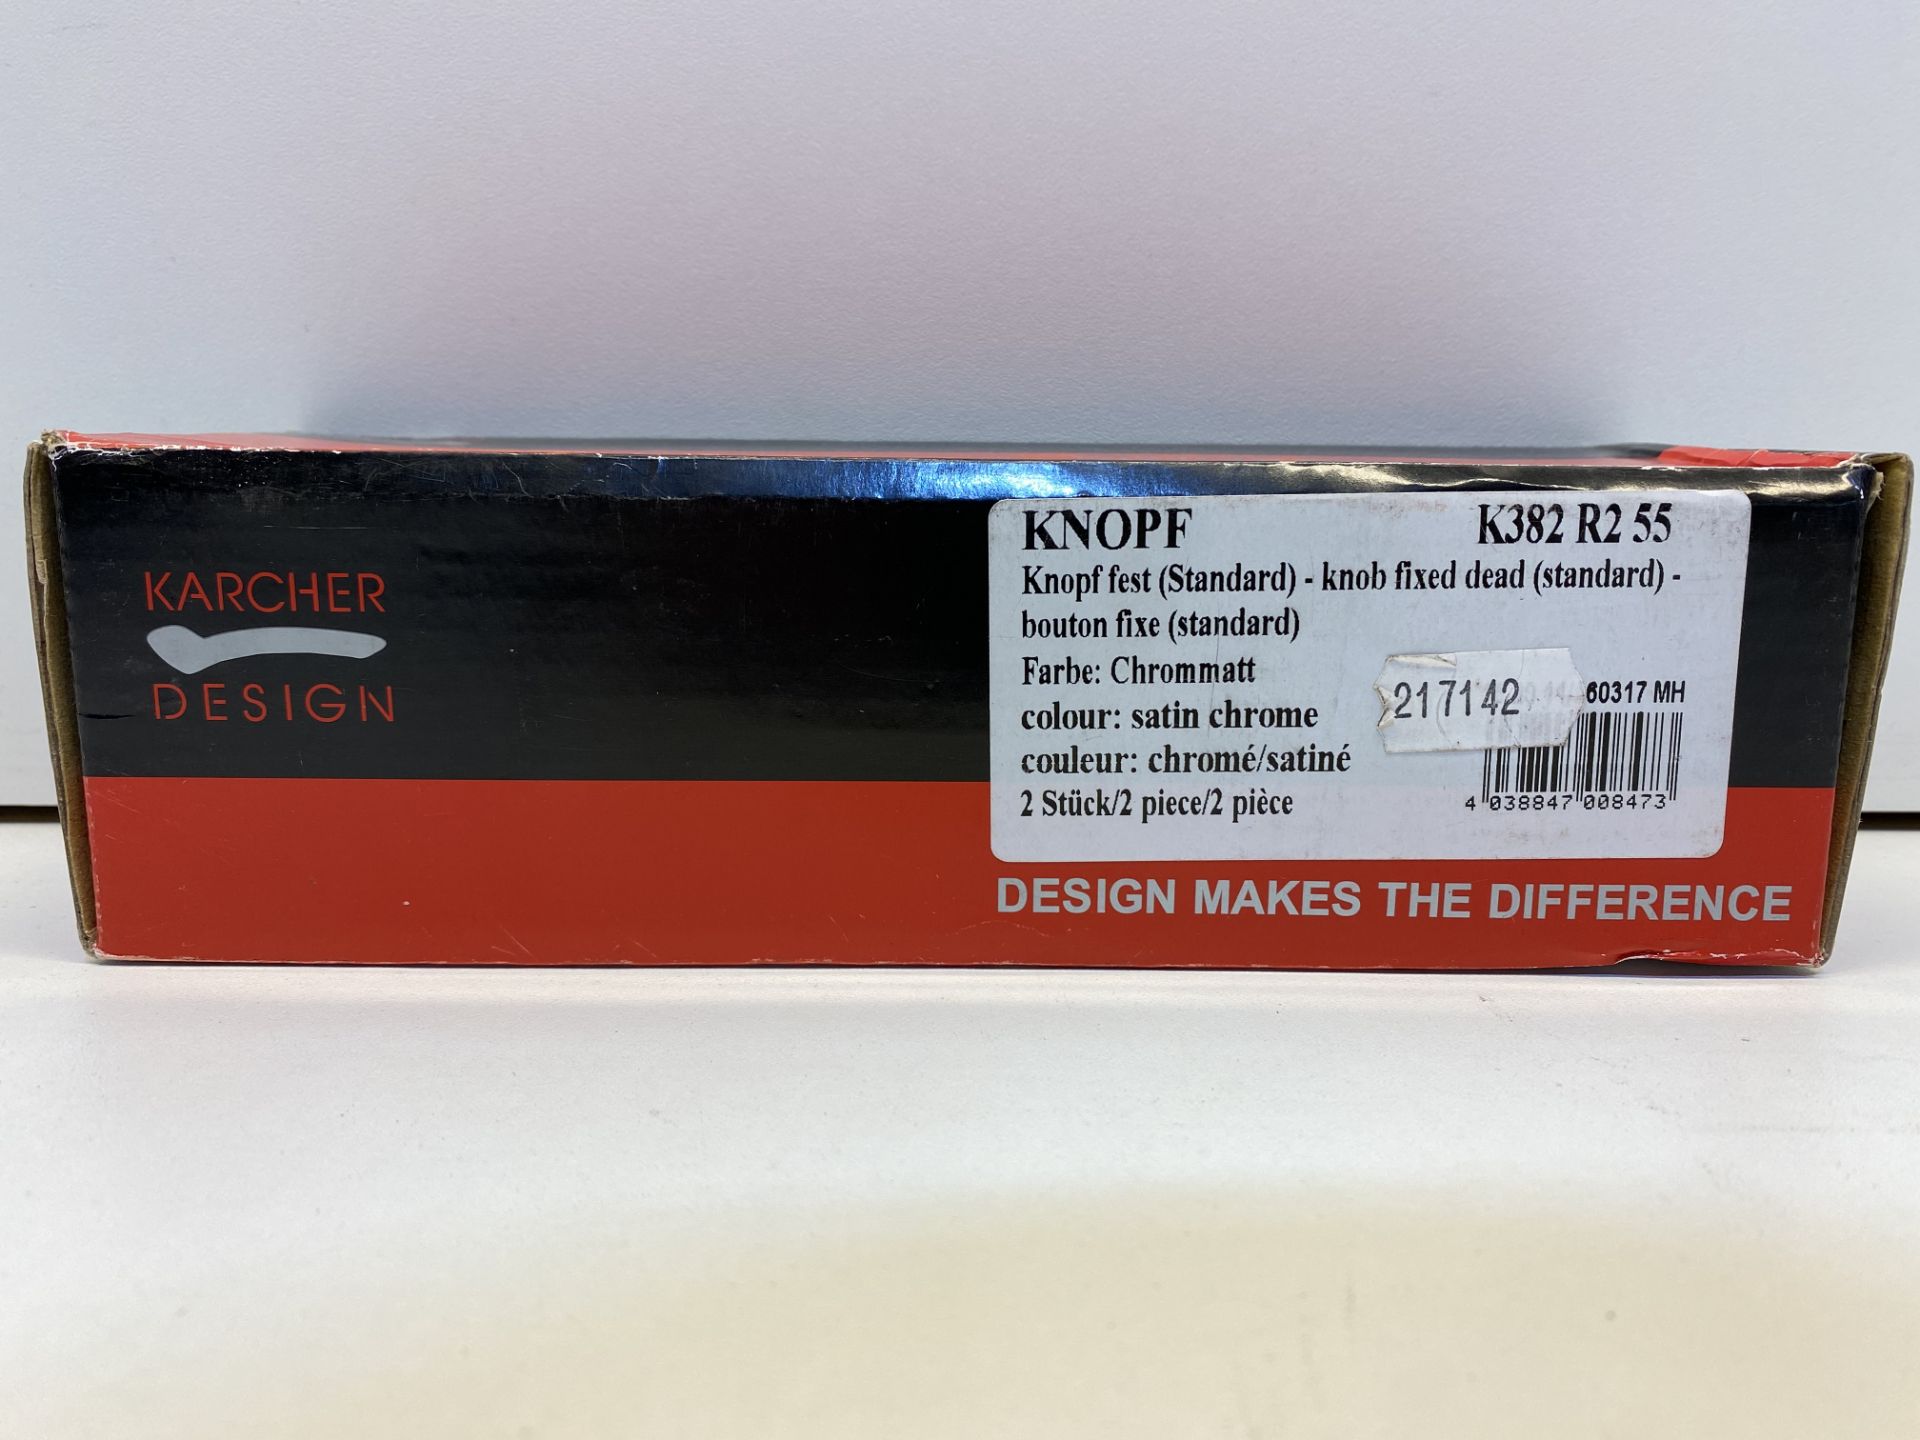 3 x Karcher Design Door Knob Sets | K382 R2 55 | Total RRP£167.64 - Image 3 of 5